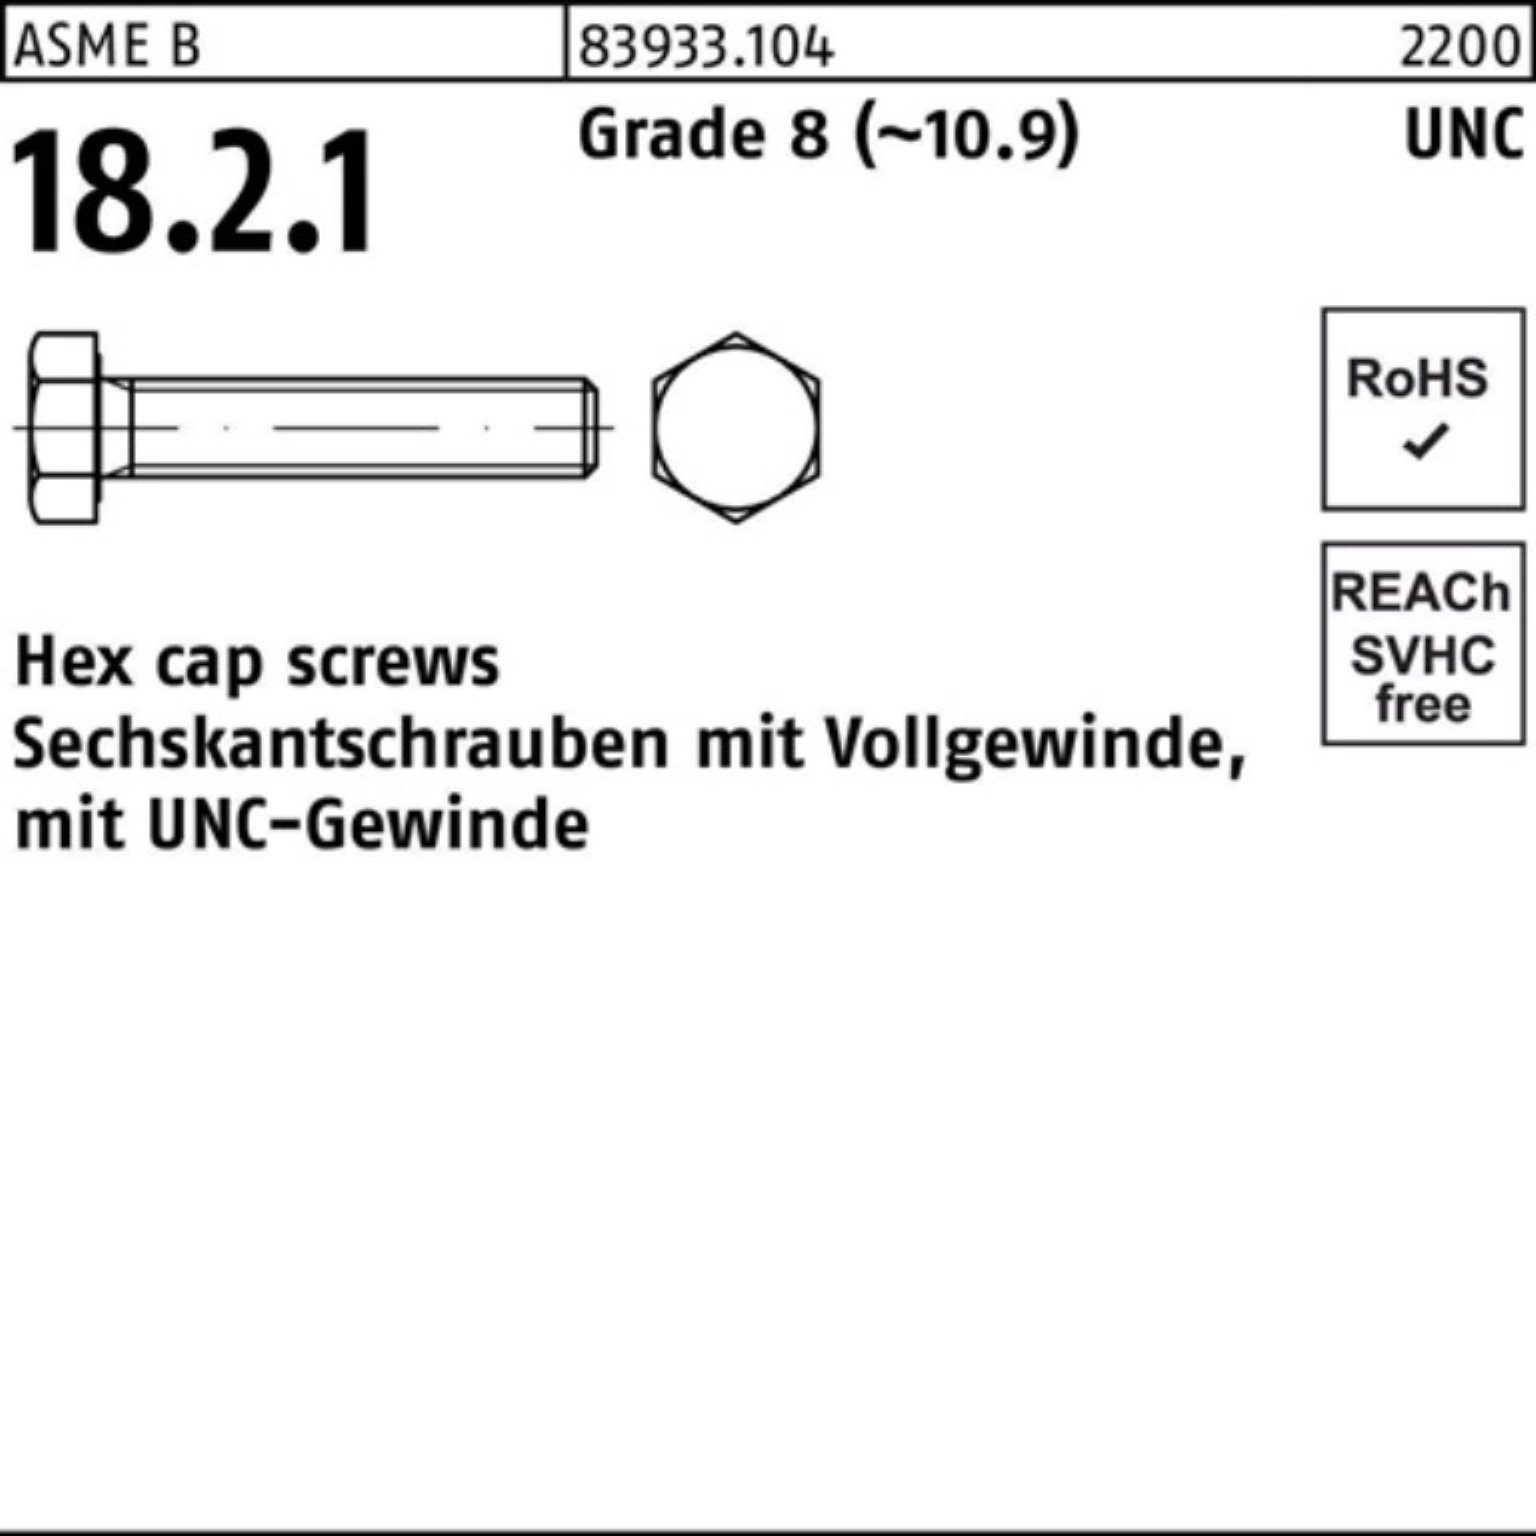 Reyher Sechskantschraube 100er Pack Sechskantschraube R 83933 UNC-Gewinde VG 3/4x 1 1/2 Grade 8